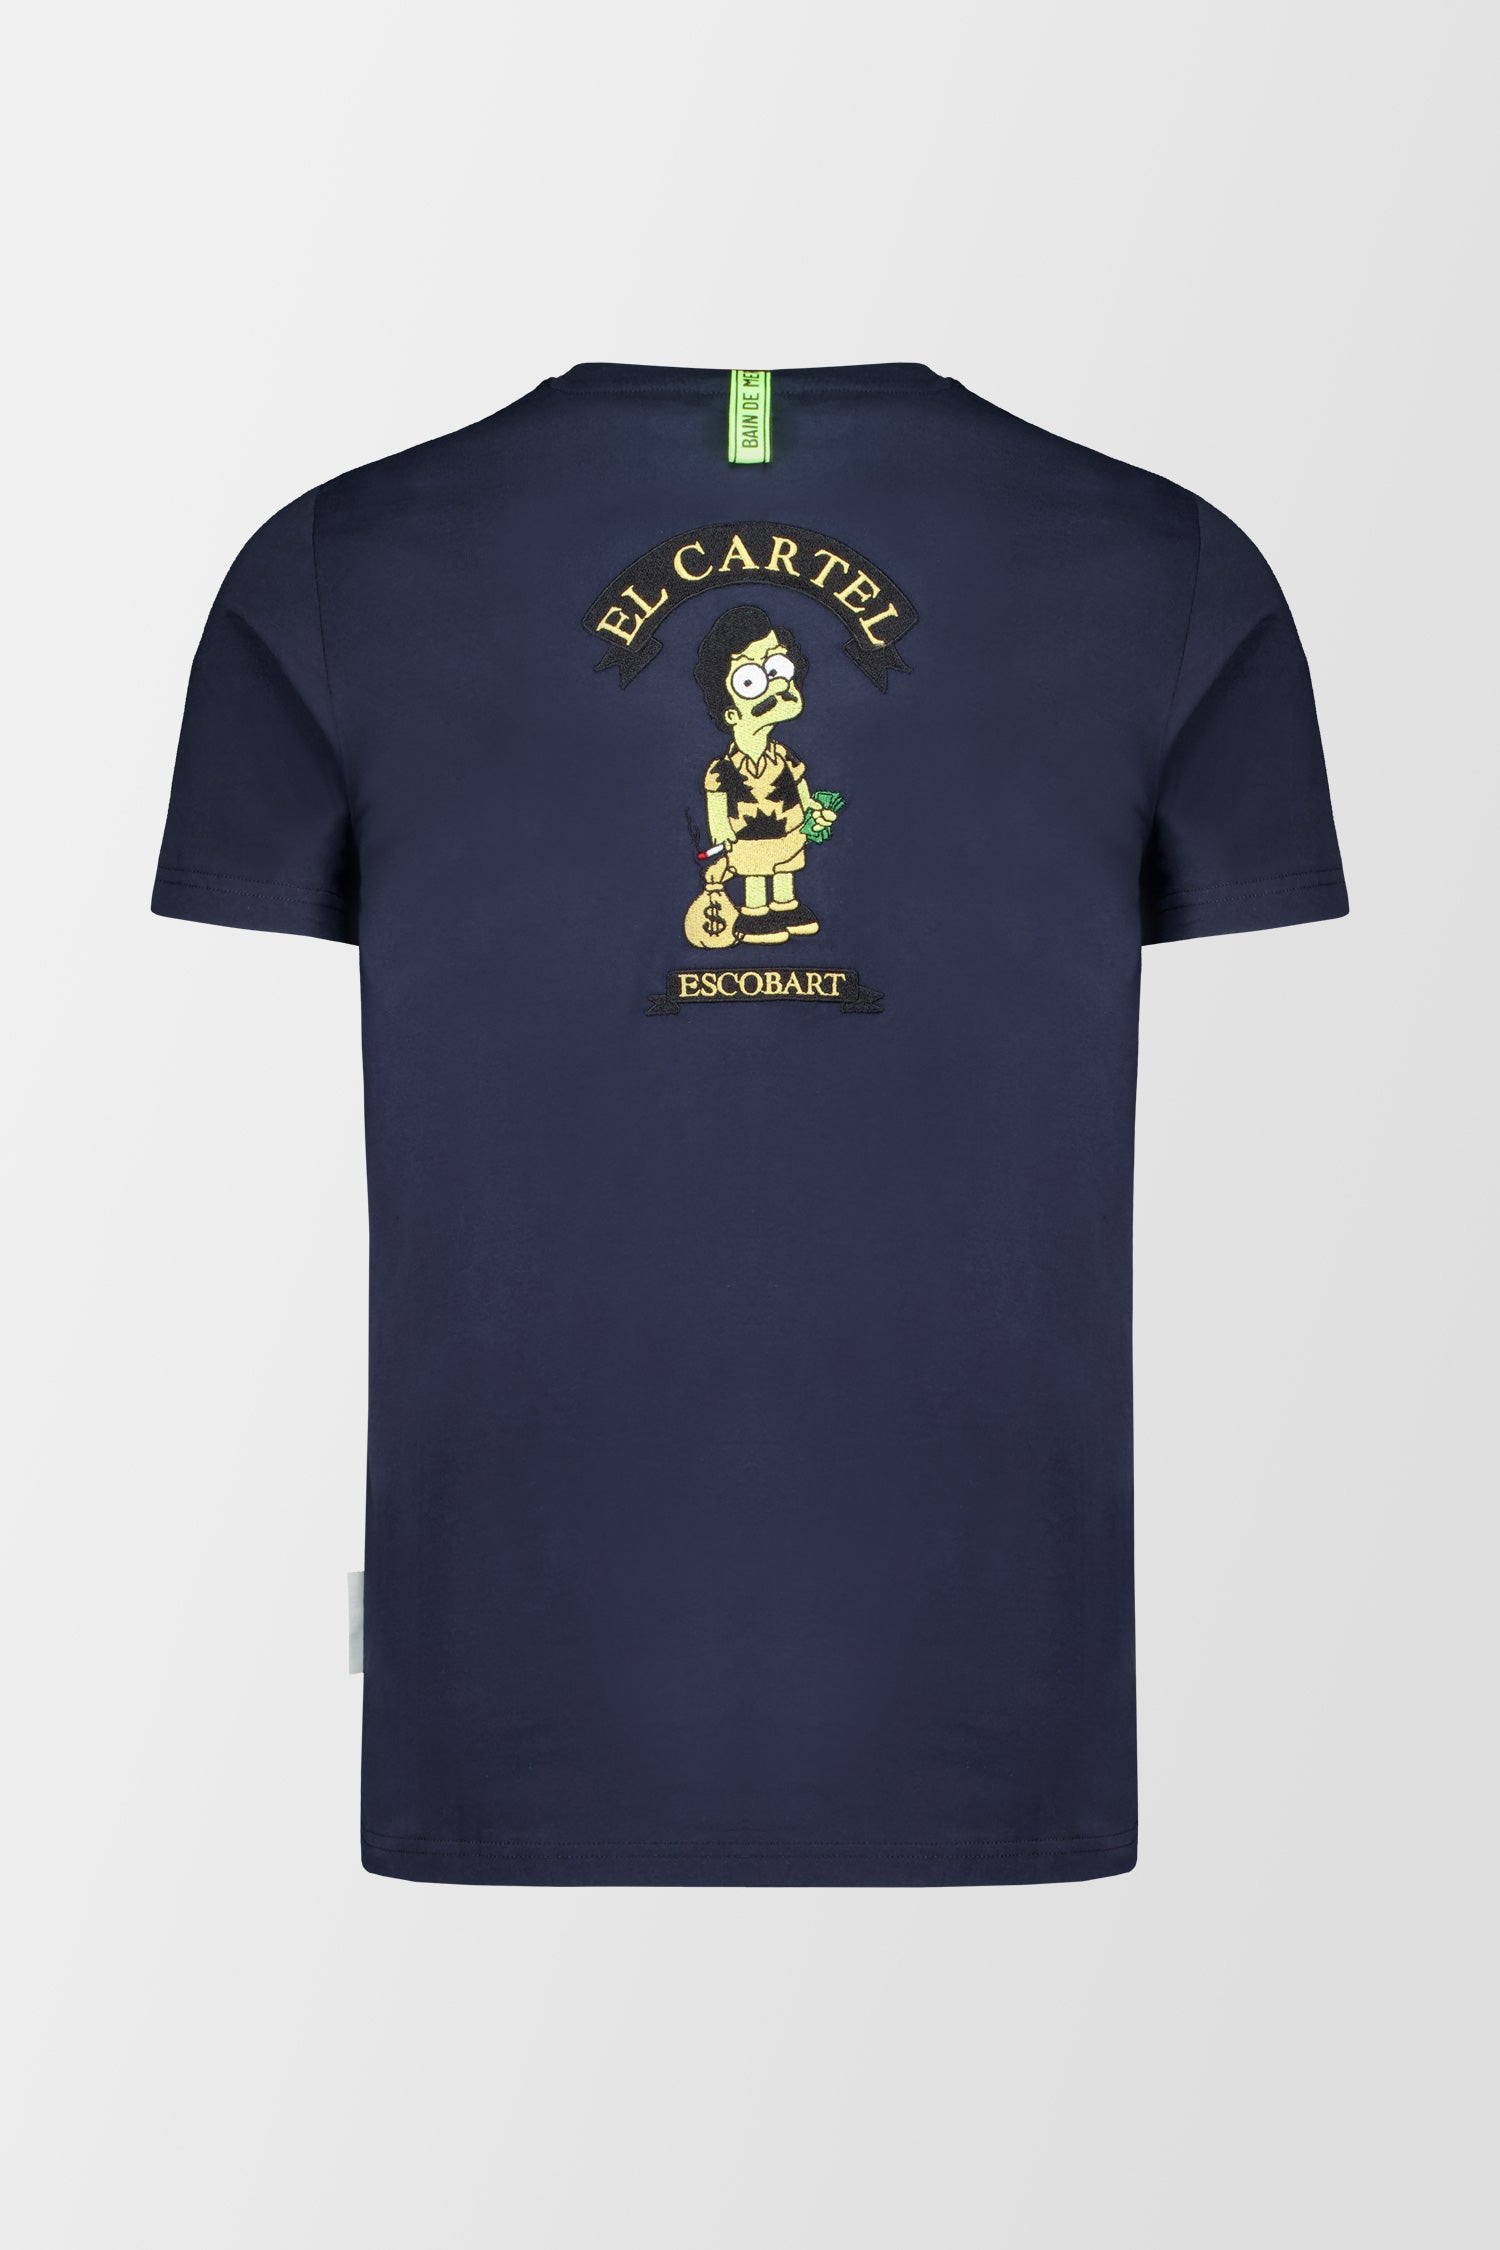 Bain de Mer Escobart Cartel T-Shirt